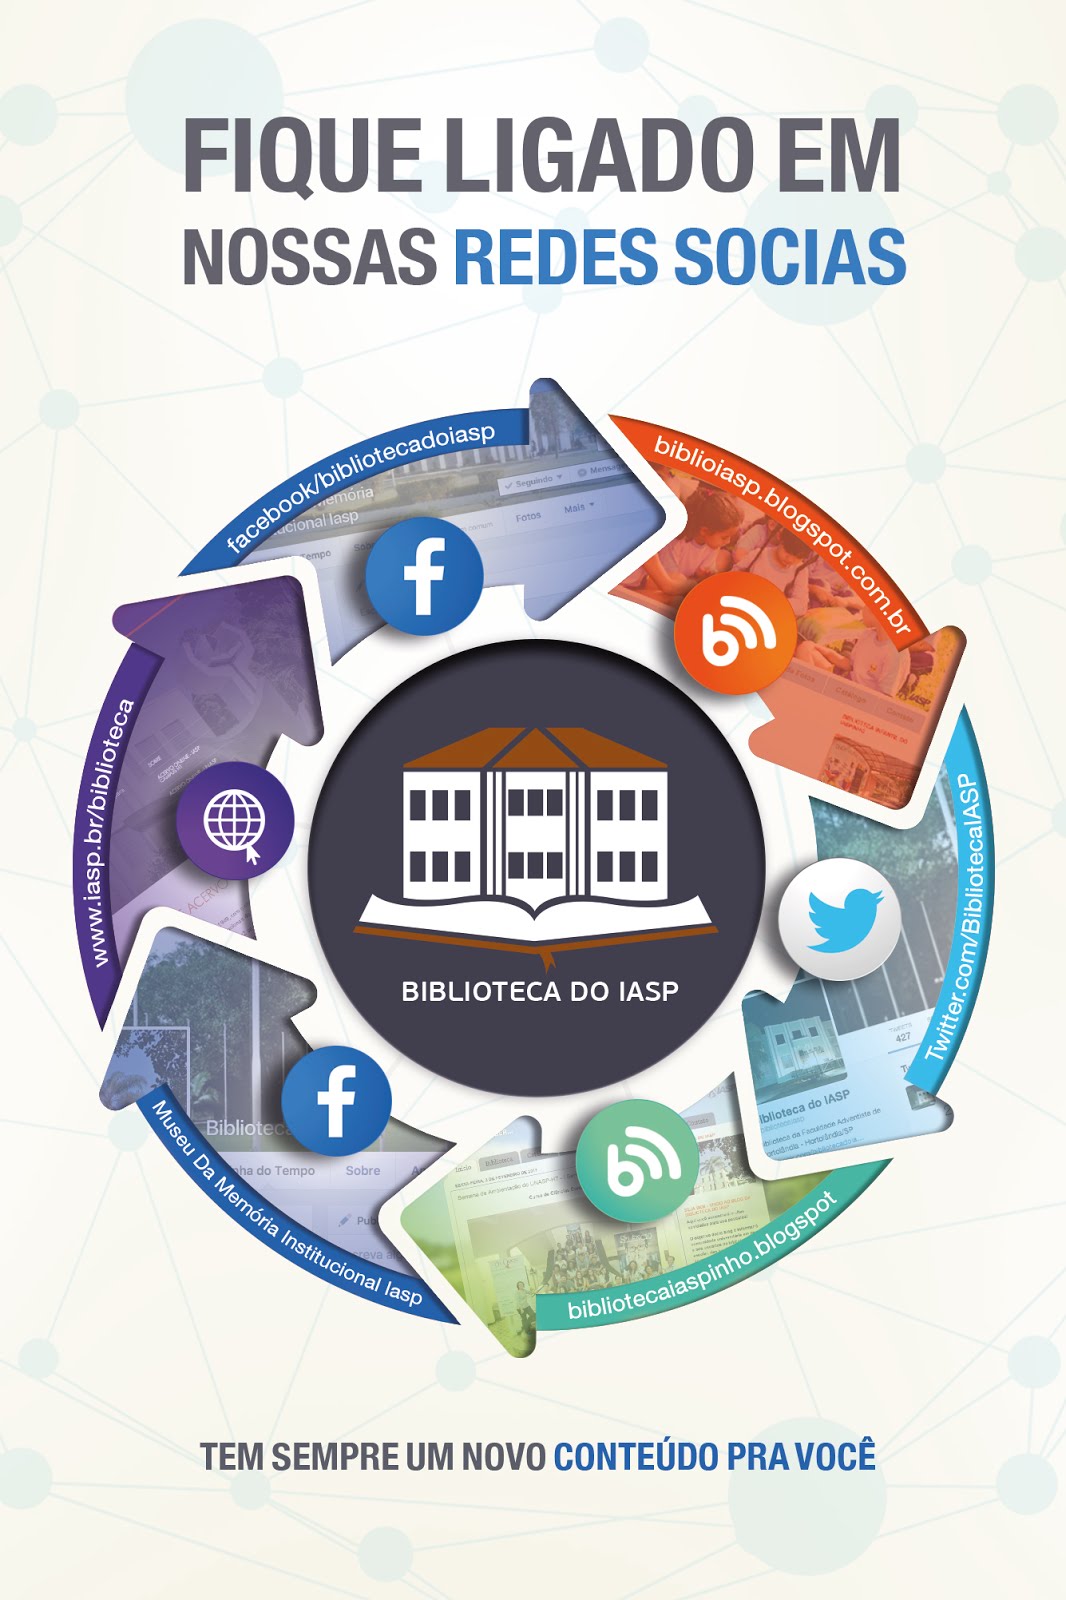 Conheça as Redes Sociais da Biblioteca do IASP/UNASP - HT